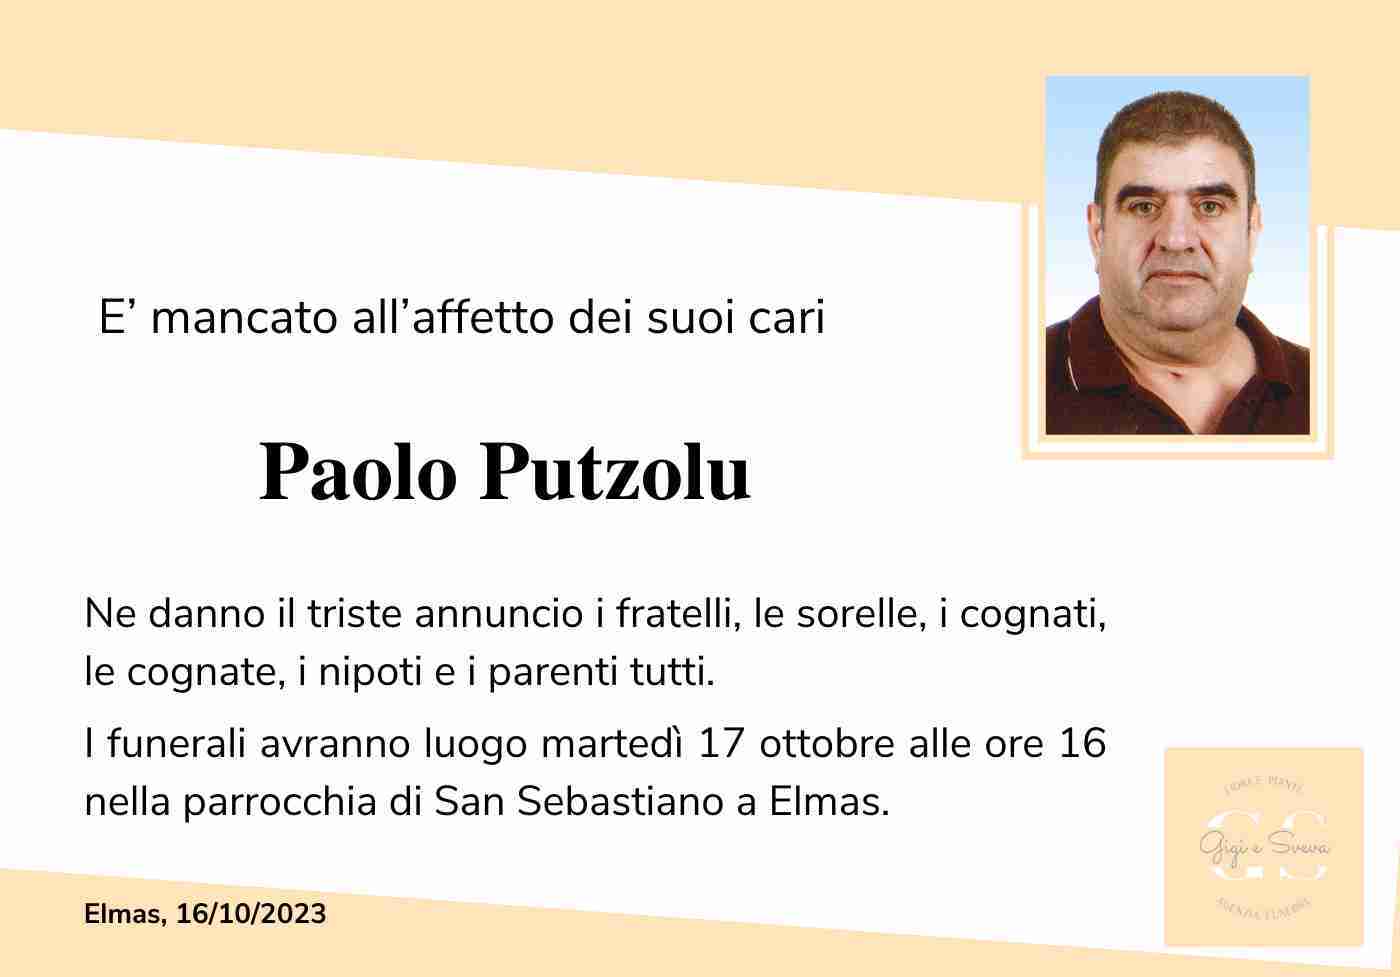 Paolo Putzolu